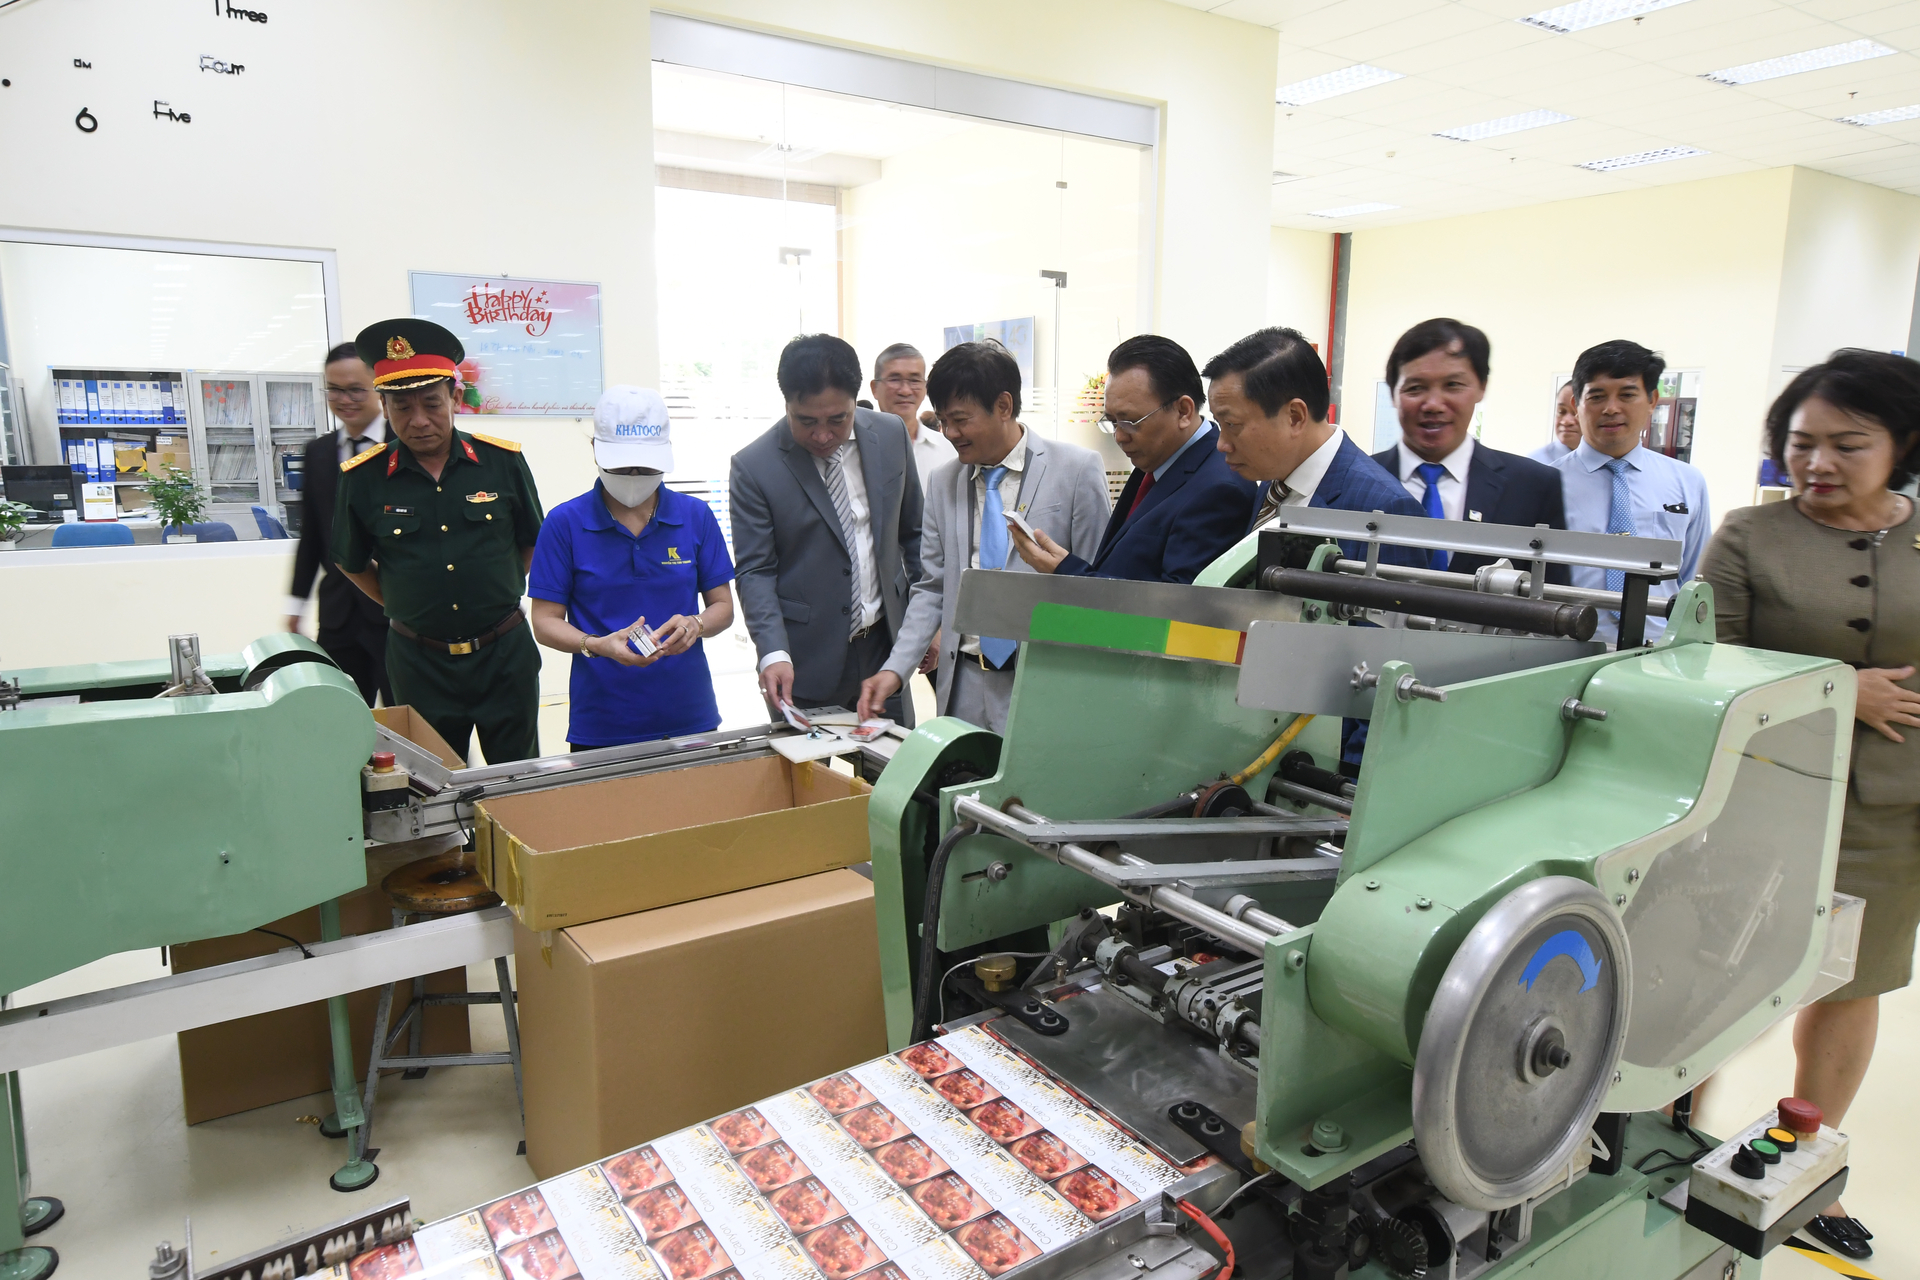 Nhà máy Thuốc lá Khatoco Khánh Hòa được đầu tư dây chuyền máy móc thiết bị hiện đại, công suất  được nâng lên 1 tỷ gói/năm.